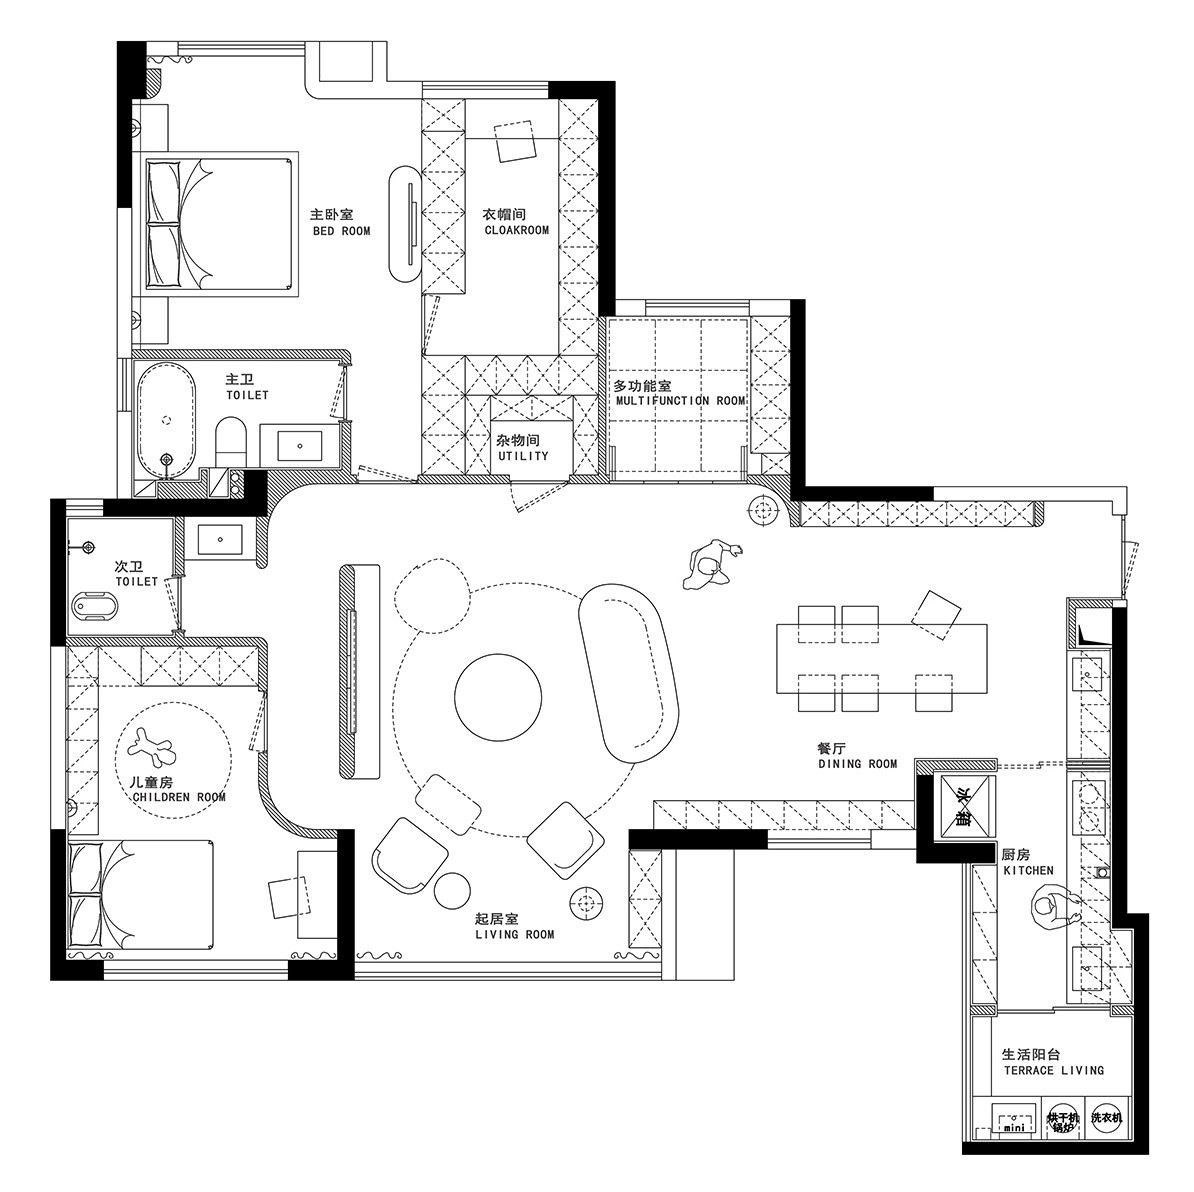 115现代三房装修效果图,静谧悠长的家居氛围装修案例效果图-美广网(图1)